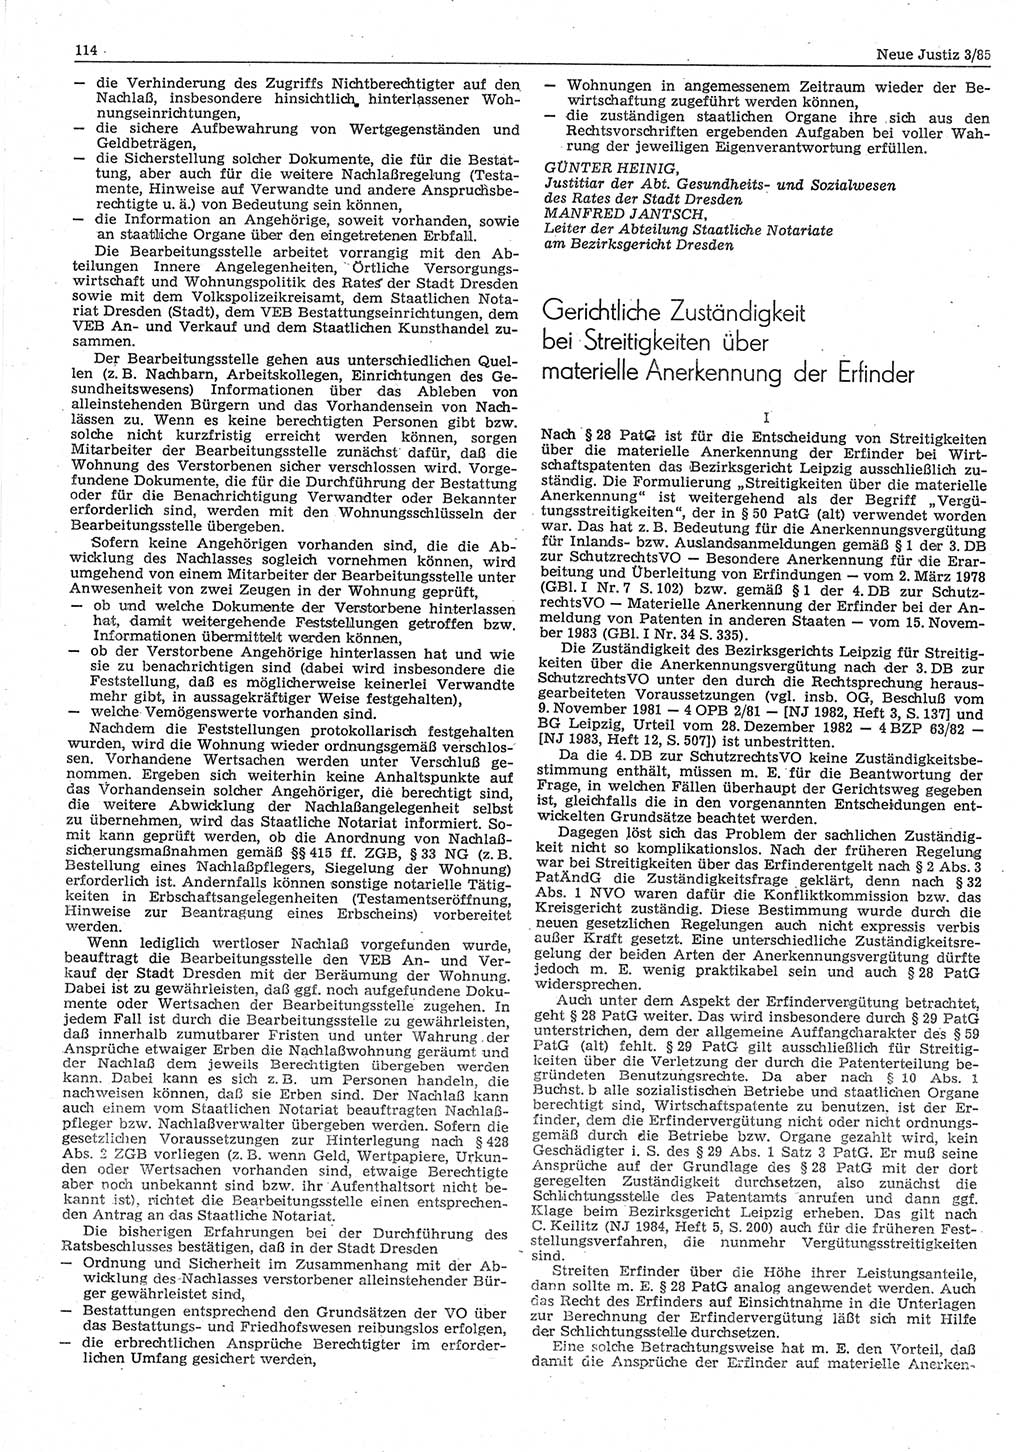 Neue Justiz (NJ), Zeitschrift für sozialistisches Recht und Gesetzlichkeit [Deutsche Demokratische Republik (DDR)], 39. Jahrgang 1985, Seite 114 (NJ DDR 1985, S. 114)